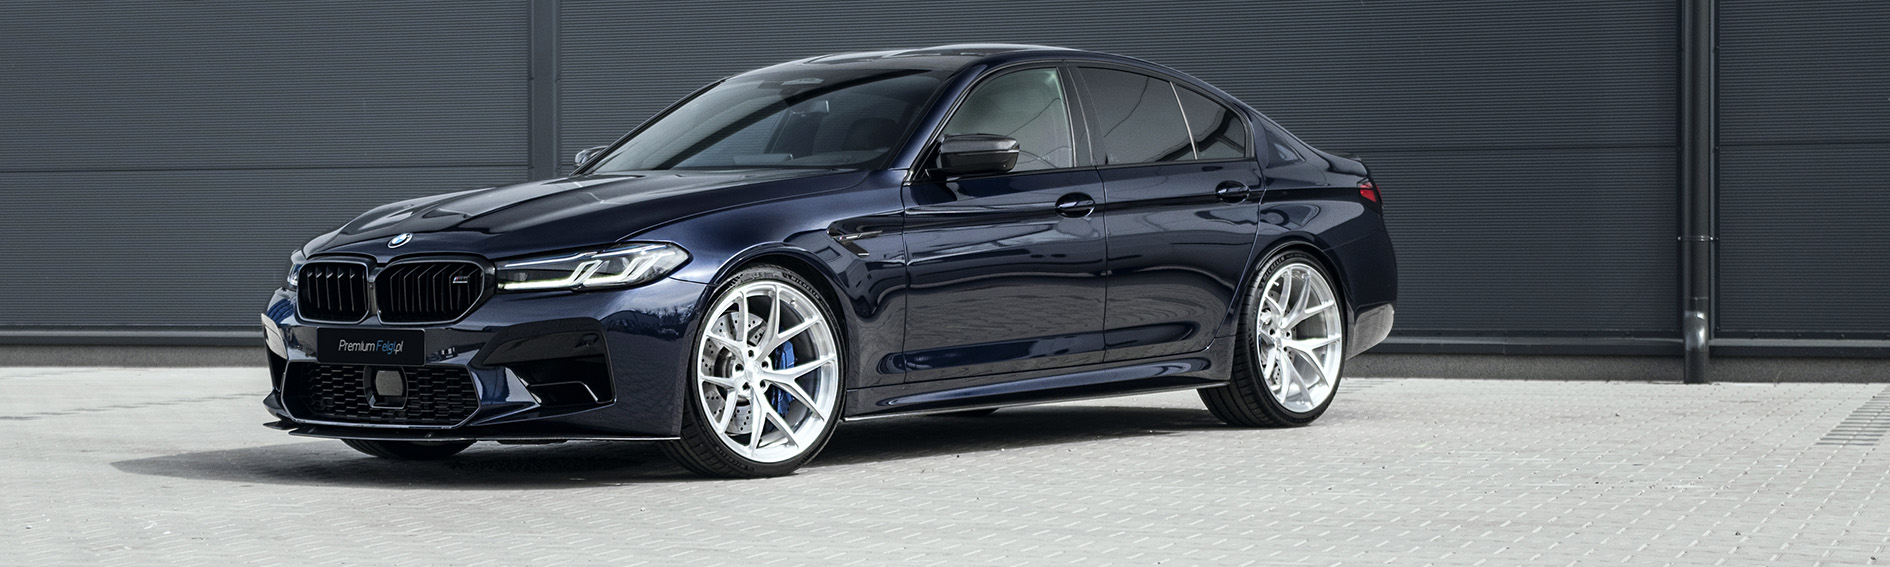 Realizacja - Felgi do BMW M5 | BC Forged RZ21 - PremiumFelgi